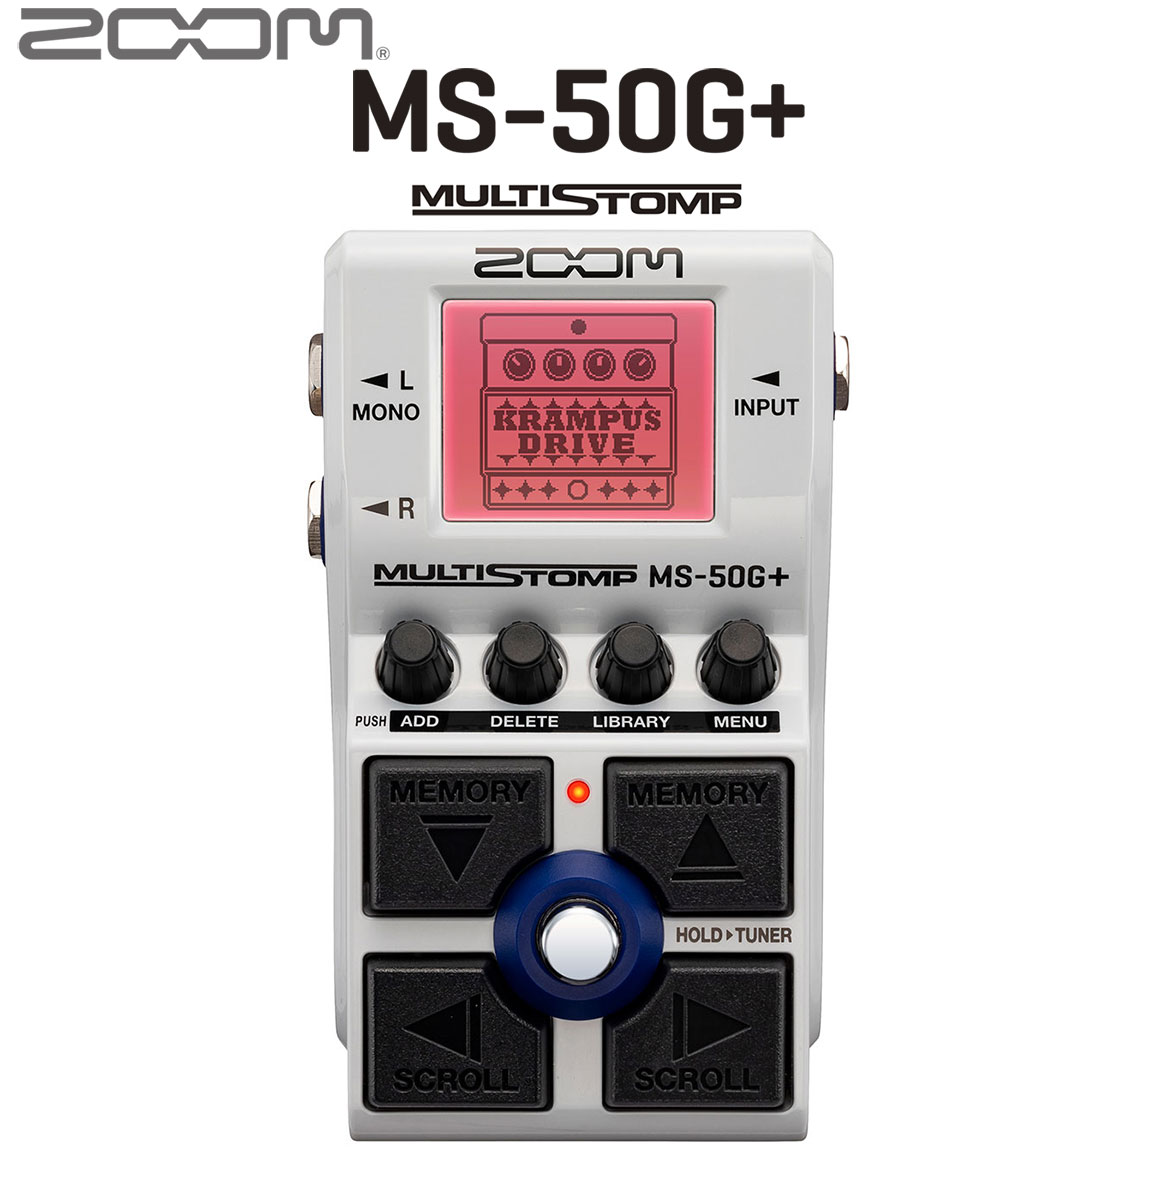 ZOOM 【予約受付商品】 【予約受付中】MS-50G+ MultiStomp